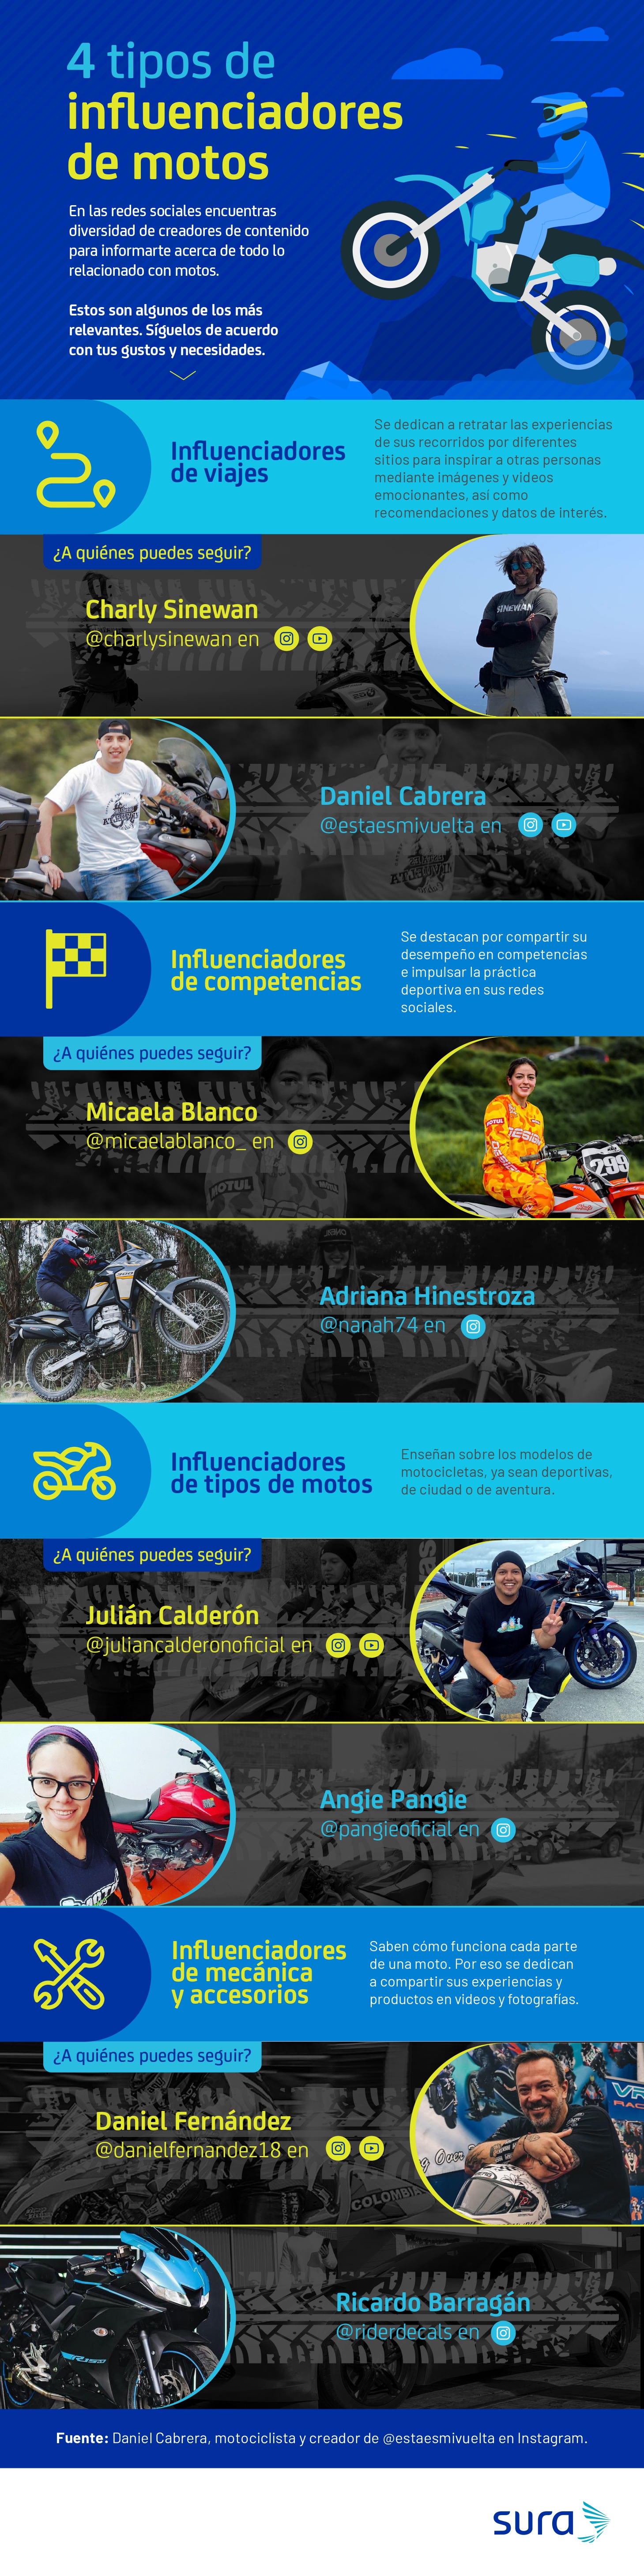 Infografía con influenciadores de motos